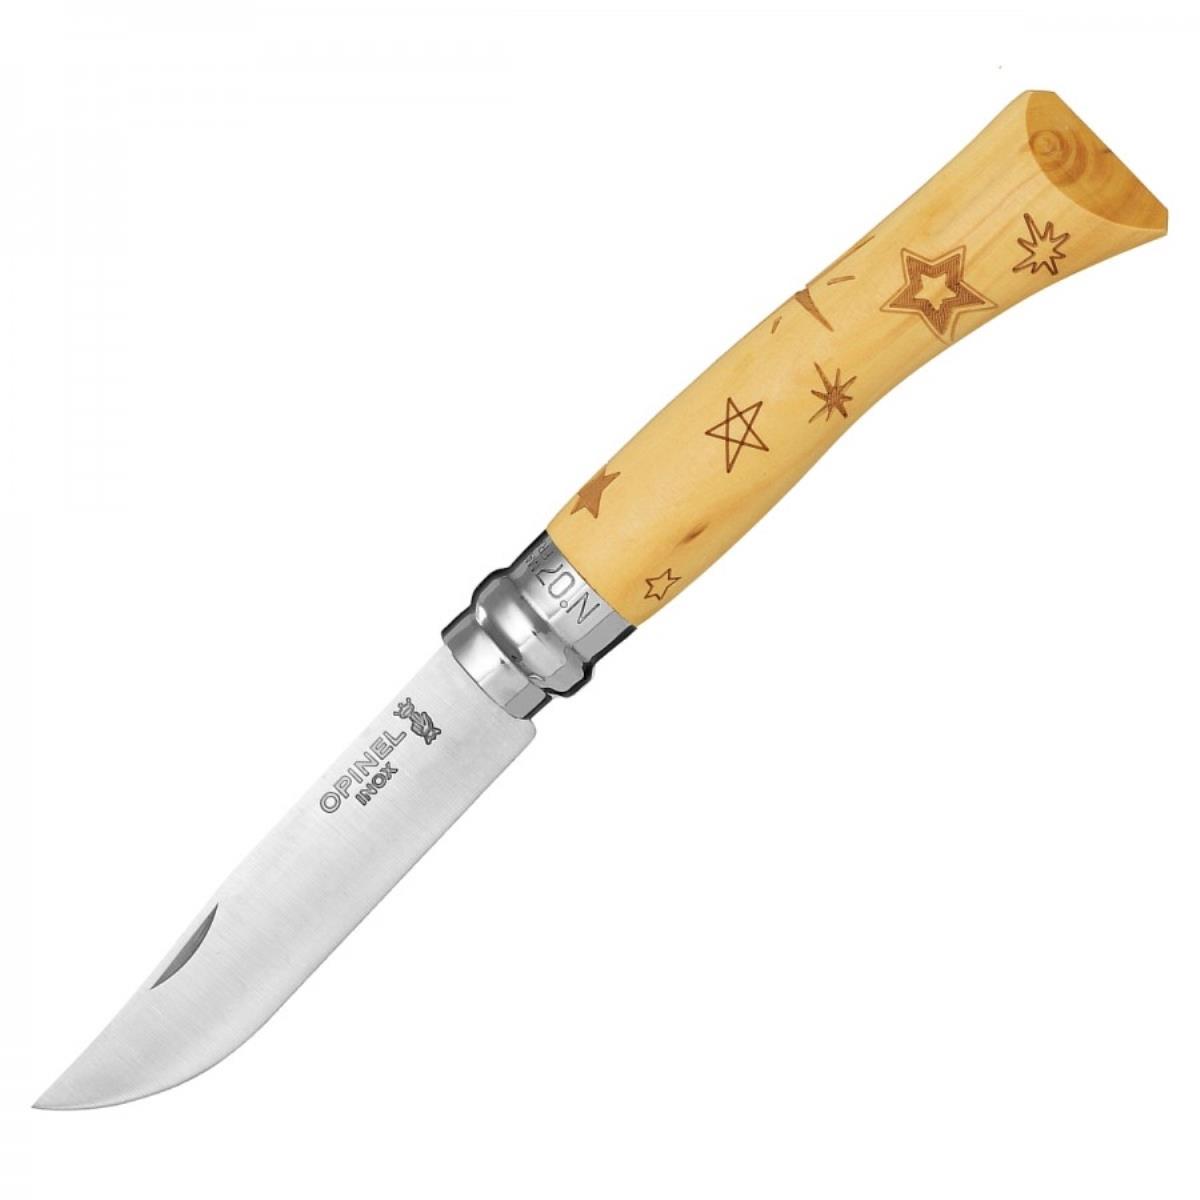 Нож №7 VRI Nature-Stars (звезды) нержавеющая сталь, рукоять самшит, длина клинка 8см OPINEL